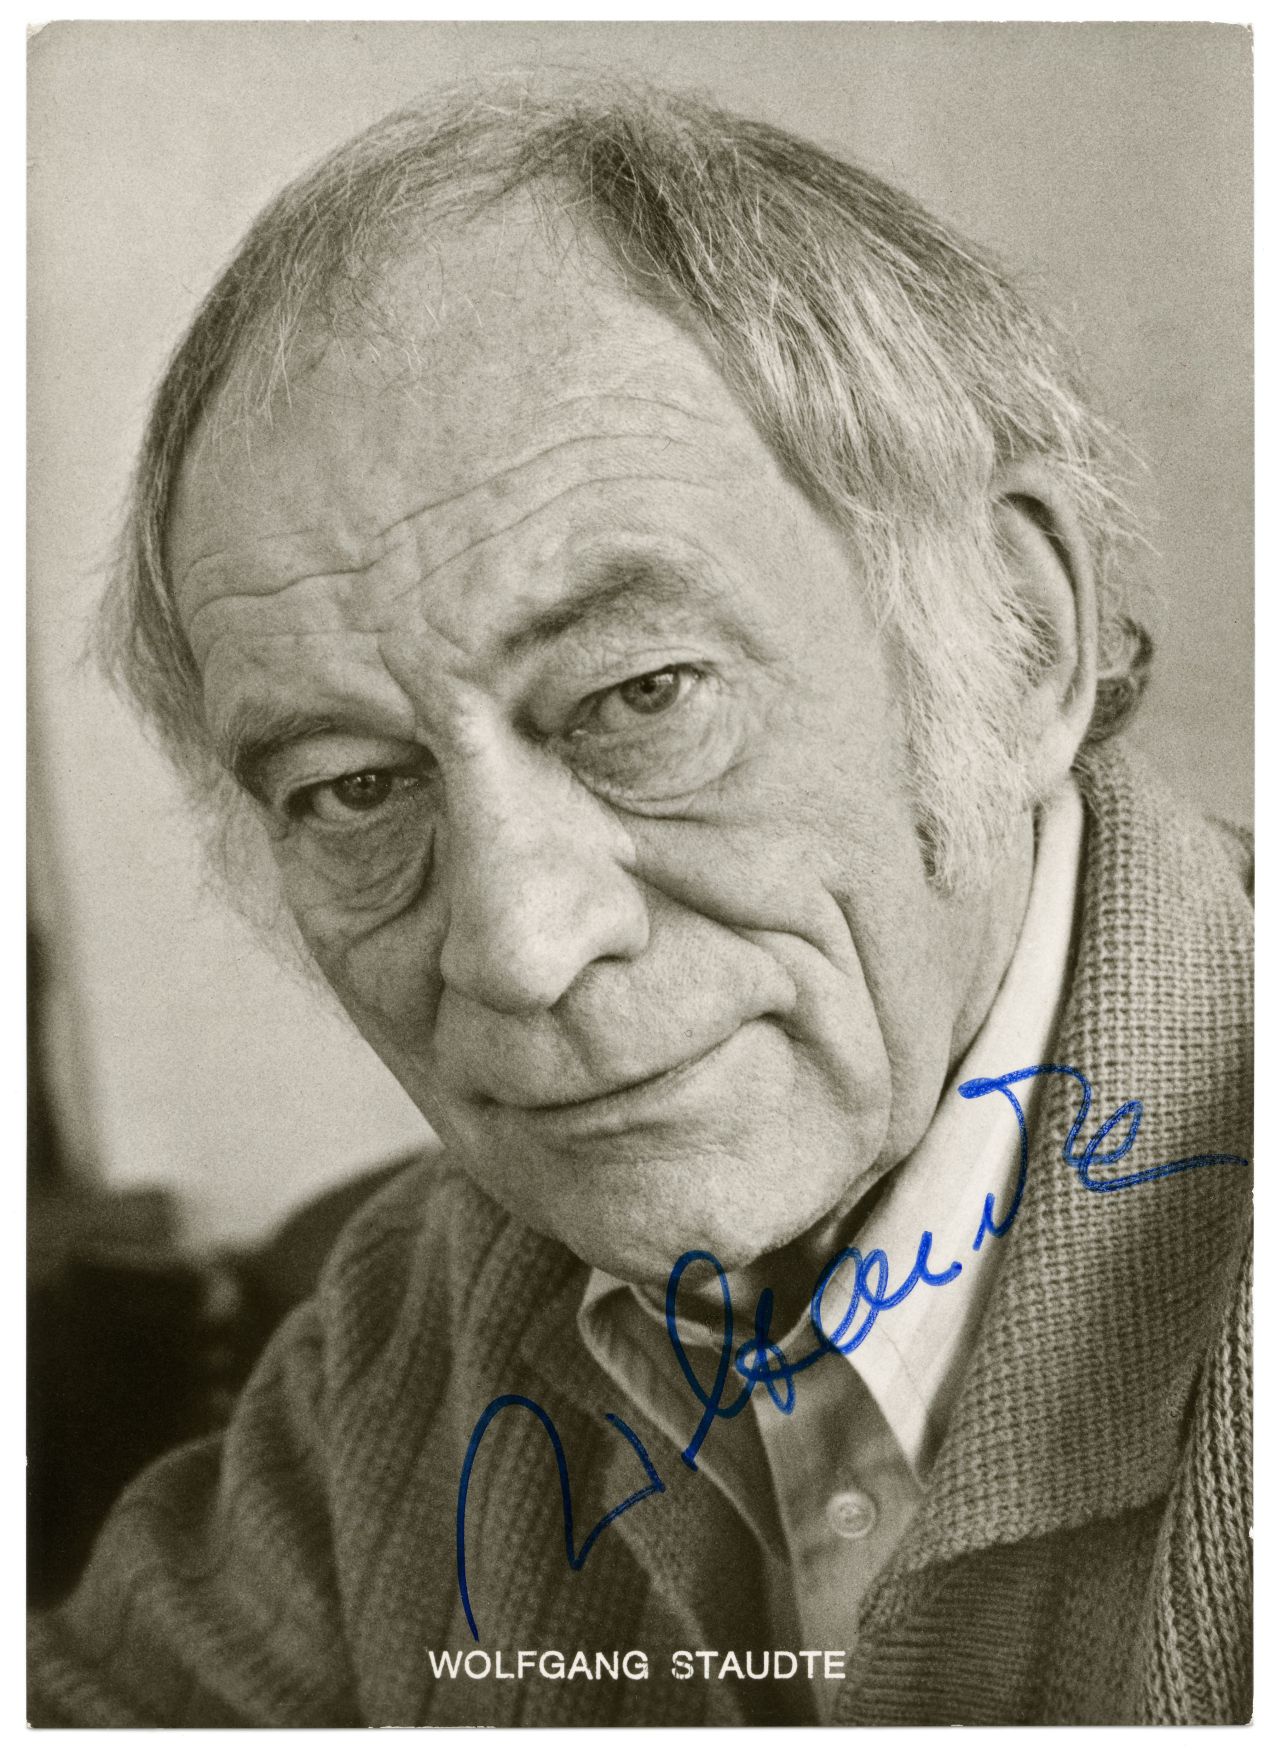 Porträtfoto von Wolfgang Staudte mit Unterschrift, 1970-1984.